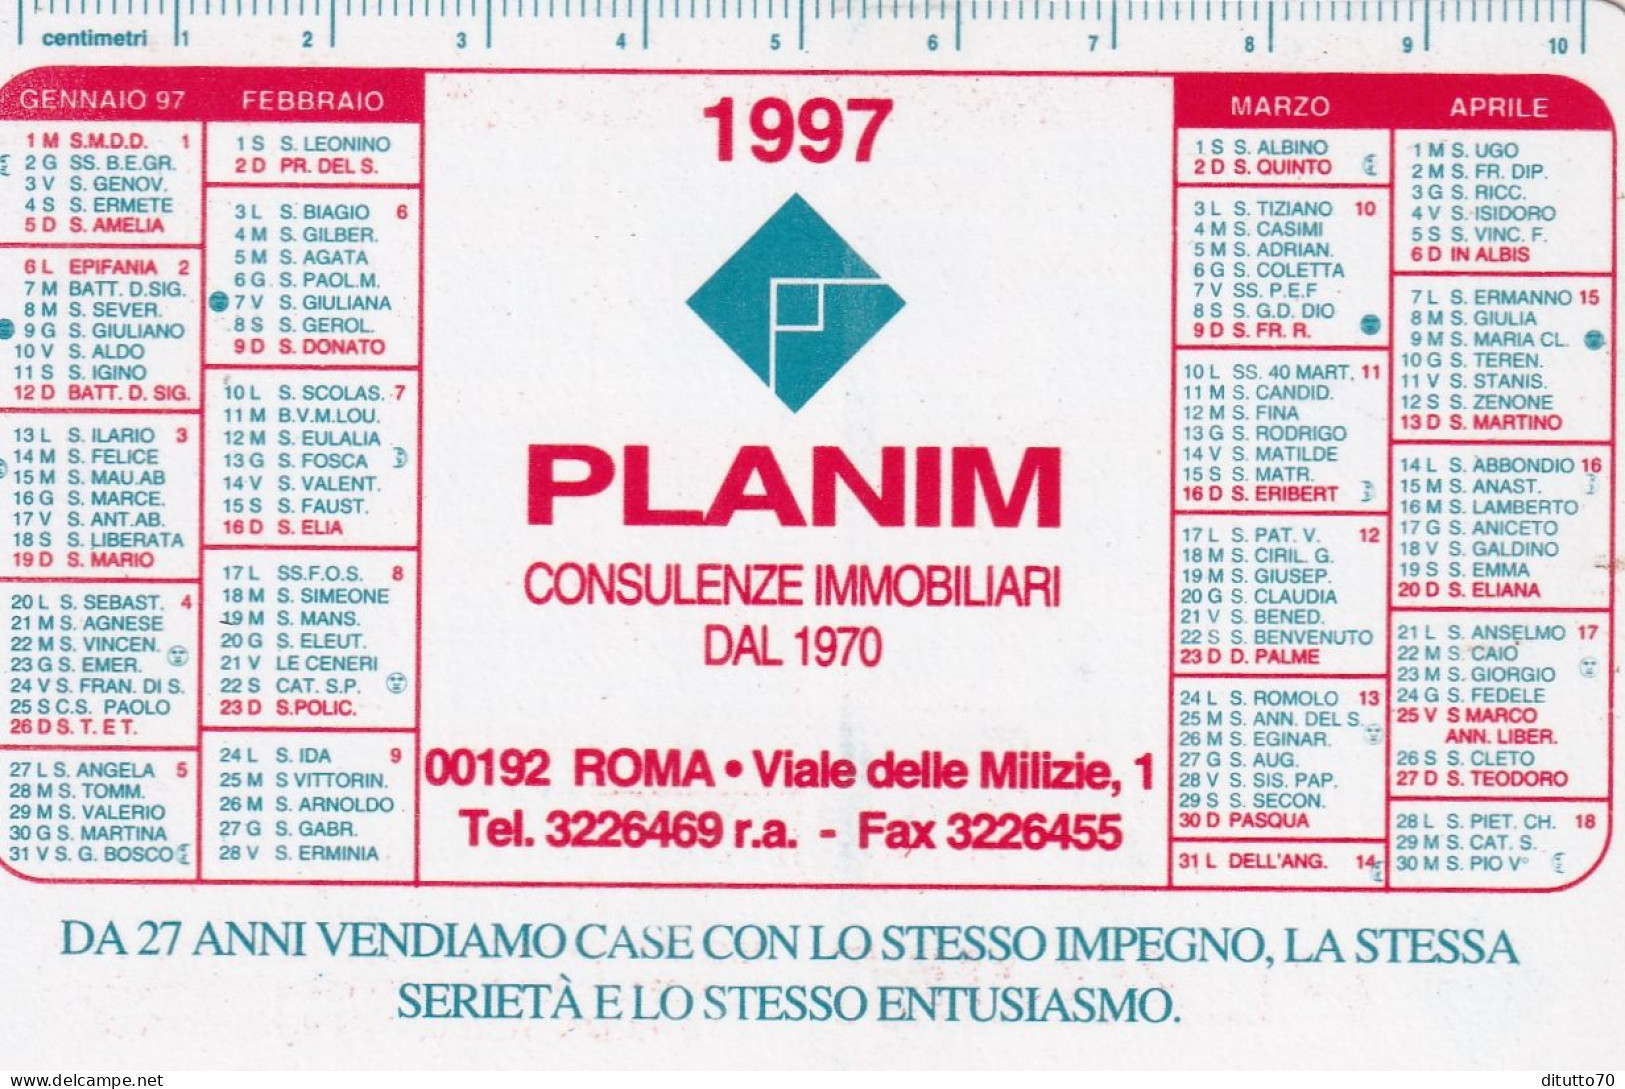 Calendarietto - Planim - Consulenza Immobiliari - Roma - Anno 1997 - Kleinformat : 1991-00